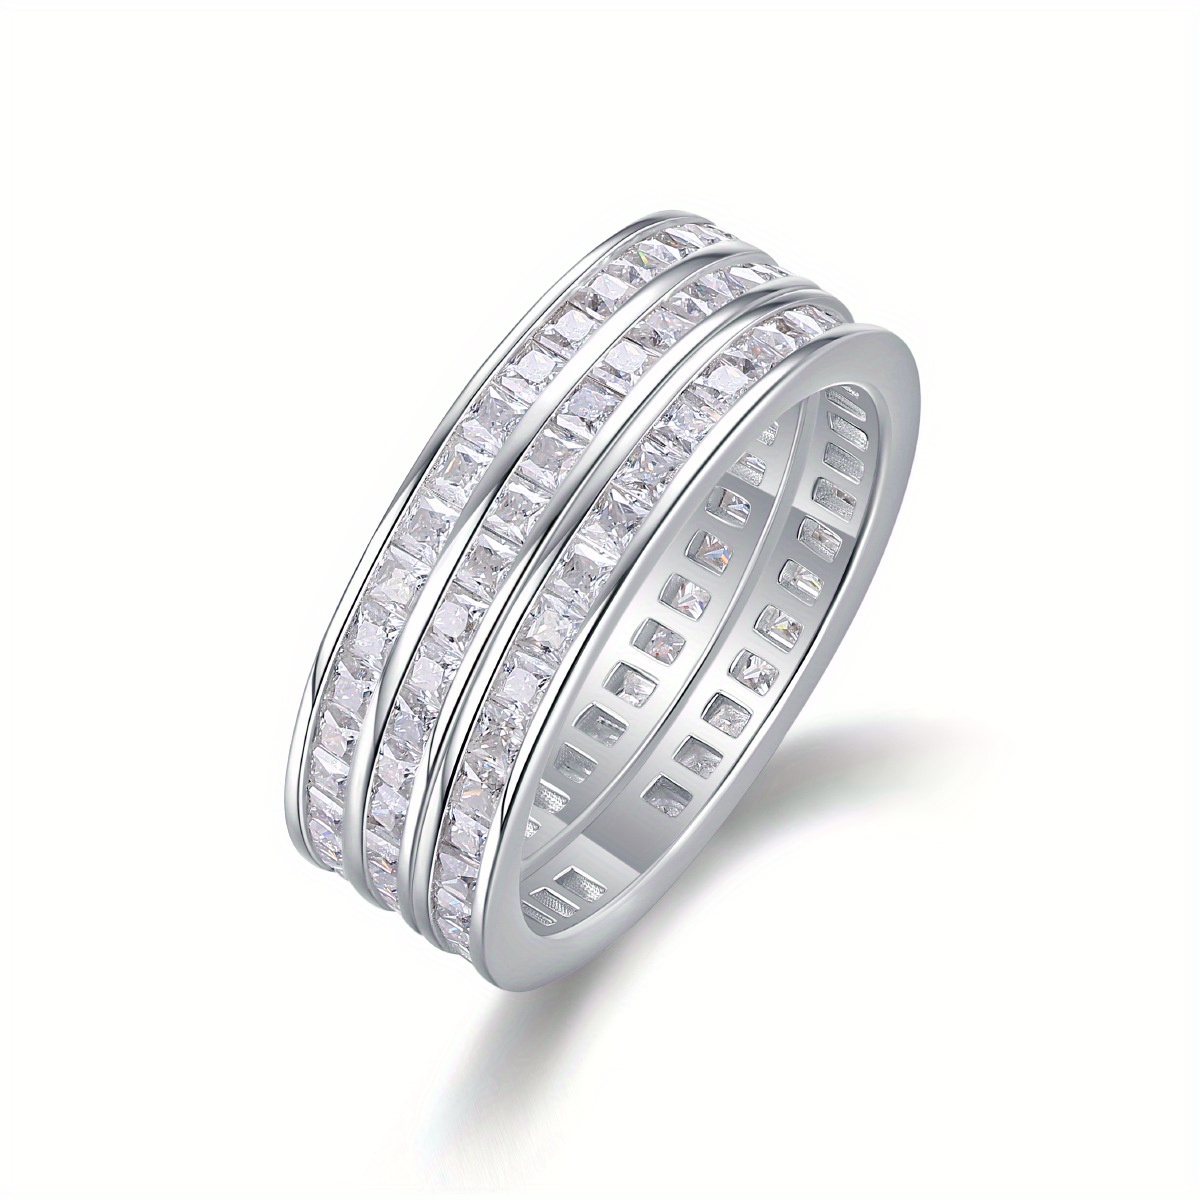 

Elegant S925 Silver Ring With 108 Moissanite, 6.48ct, Plated Unisex Design For Men& Women